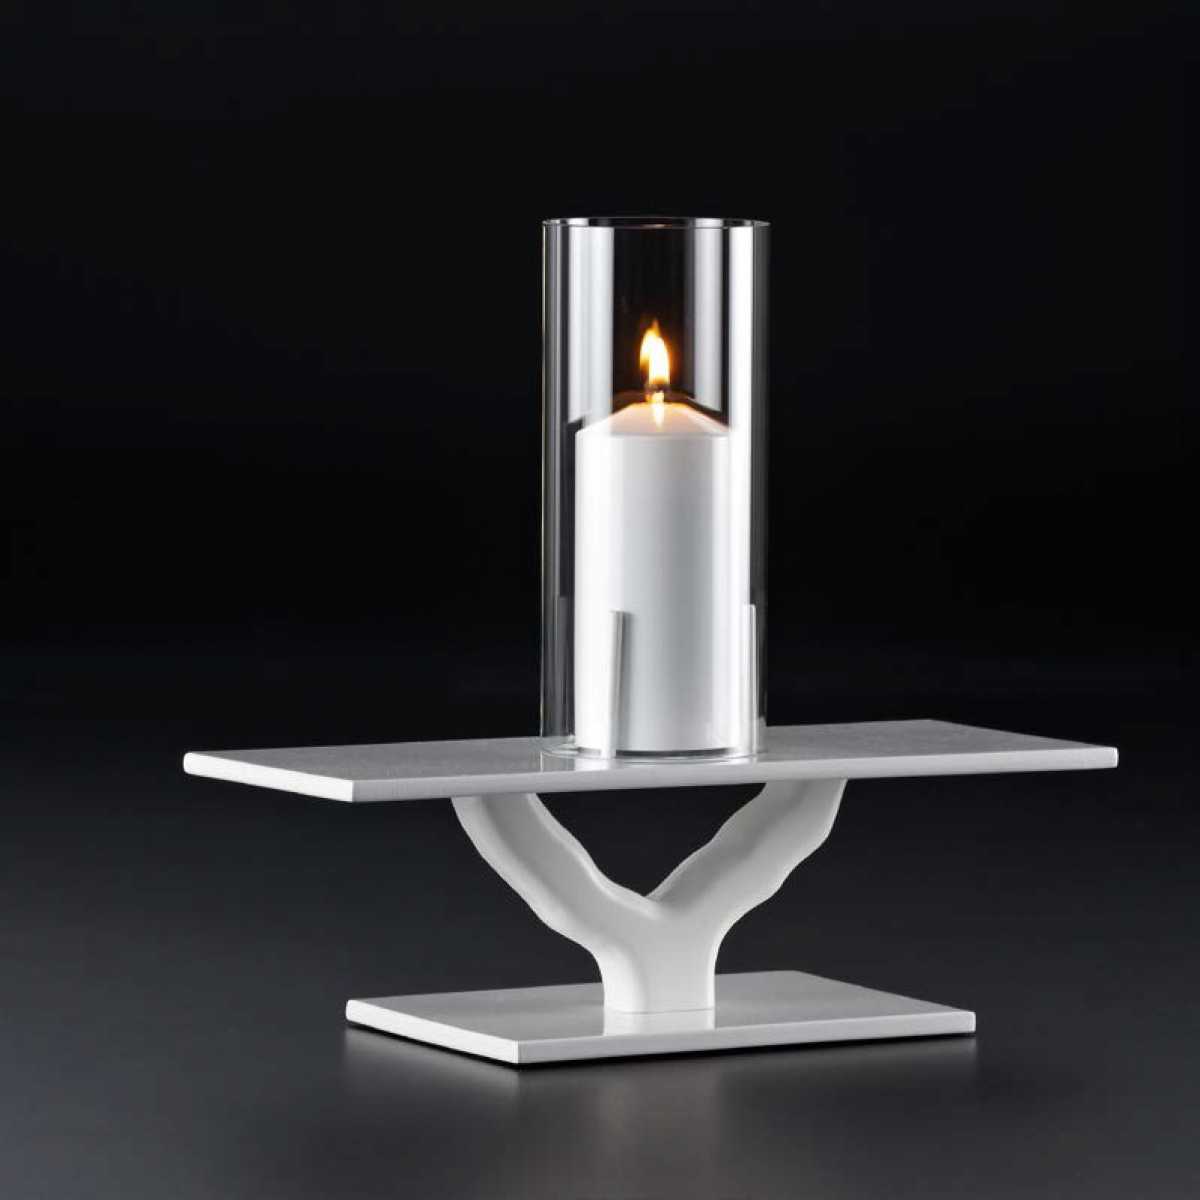 KSI Cedre 1 Table Lamp